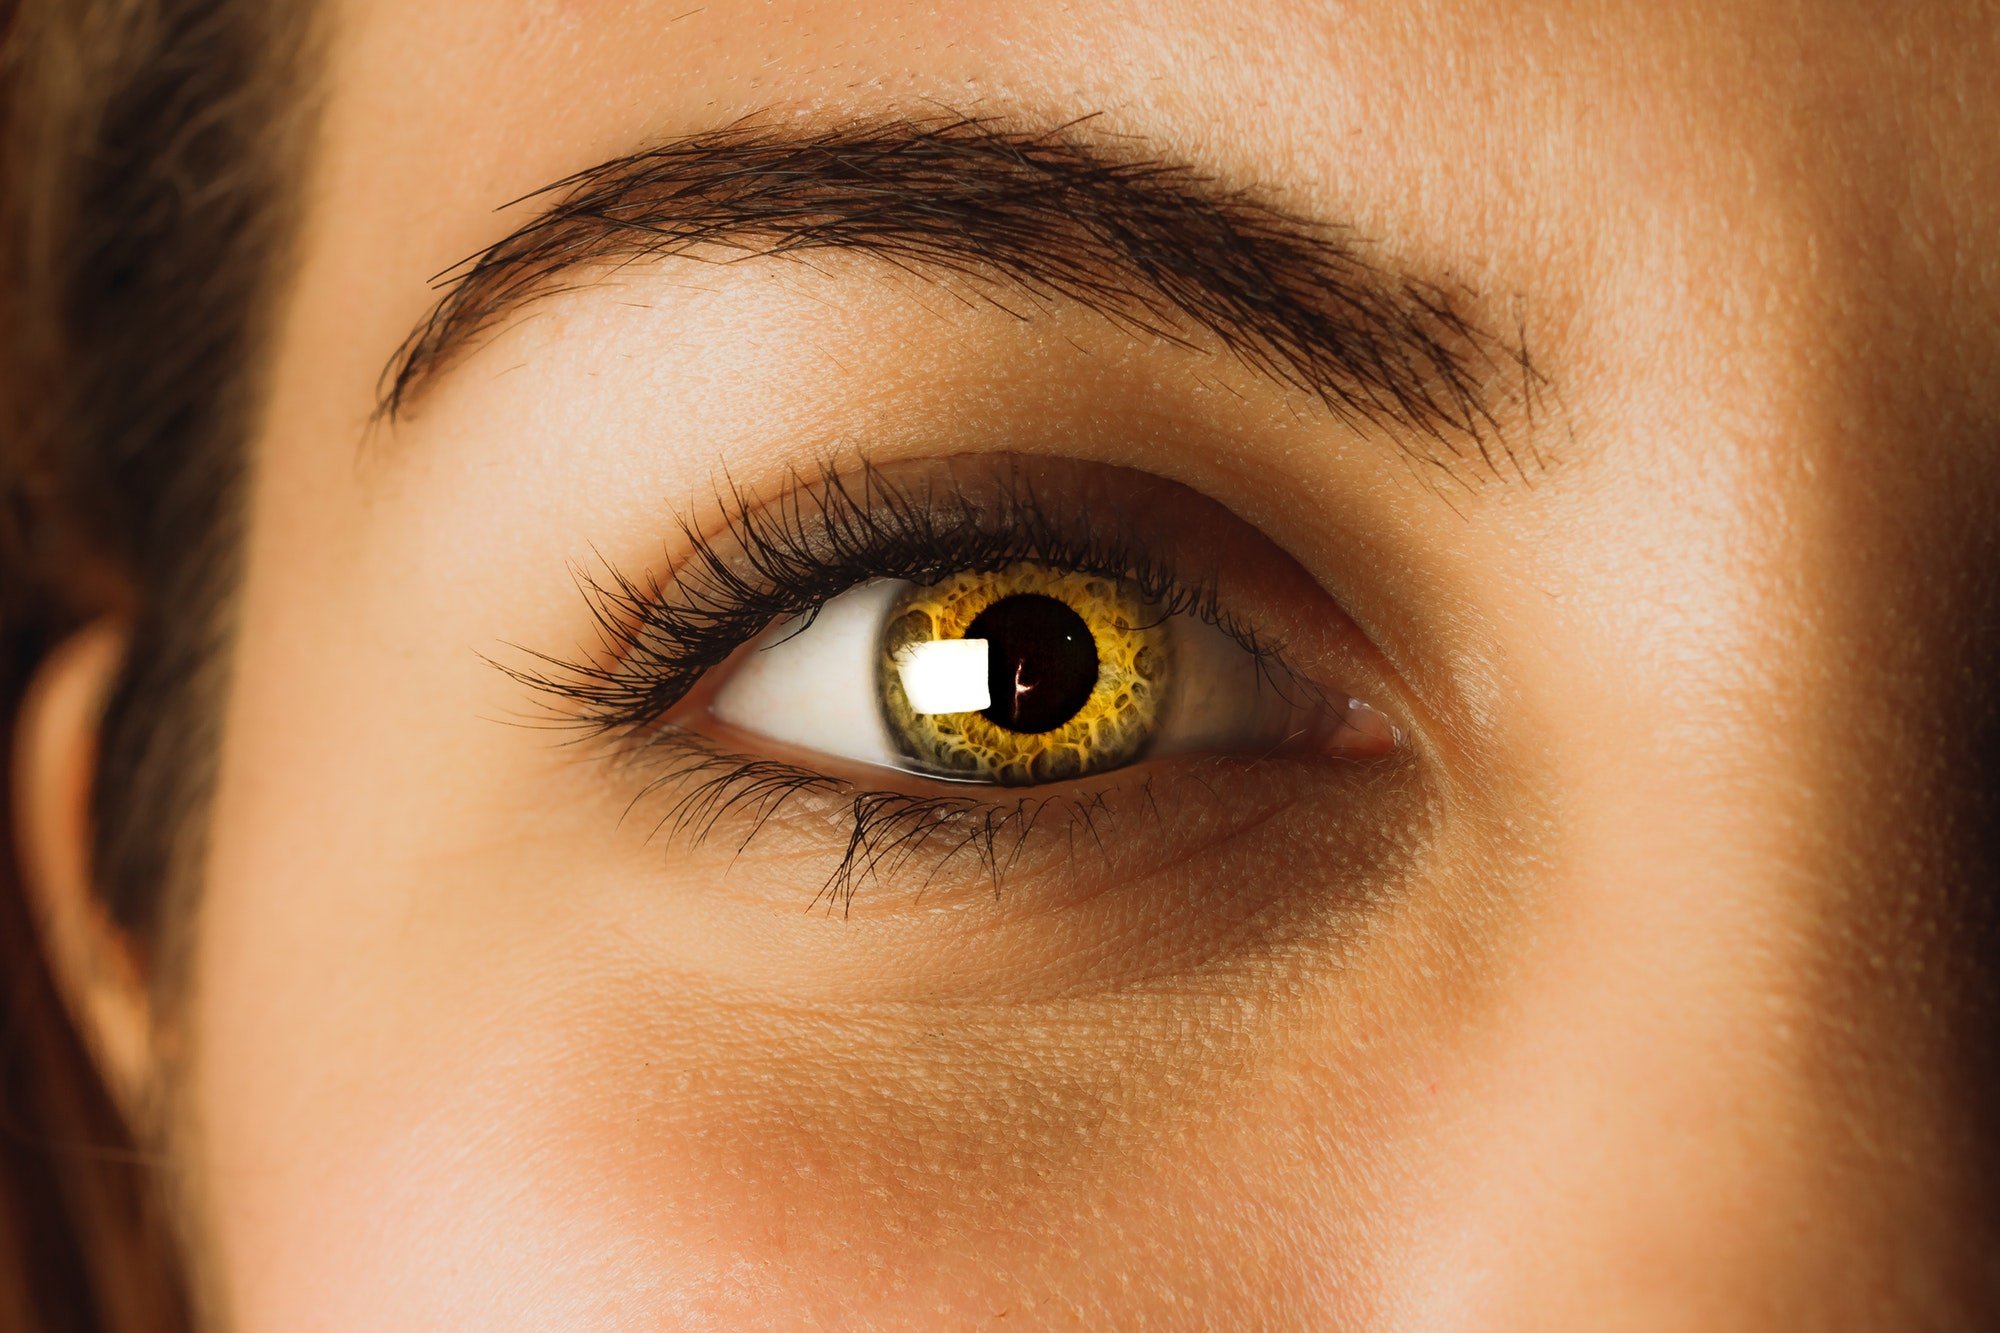 Вые глазах. Глаза. Янтарные глаза. Золотистый цвет глаз. Глаз человека.